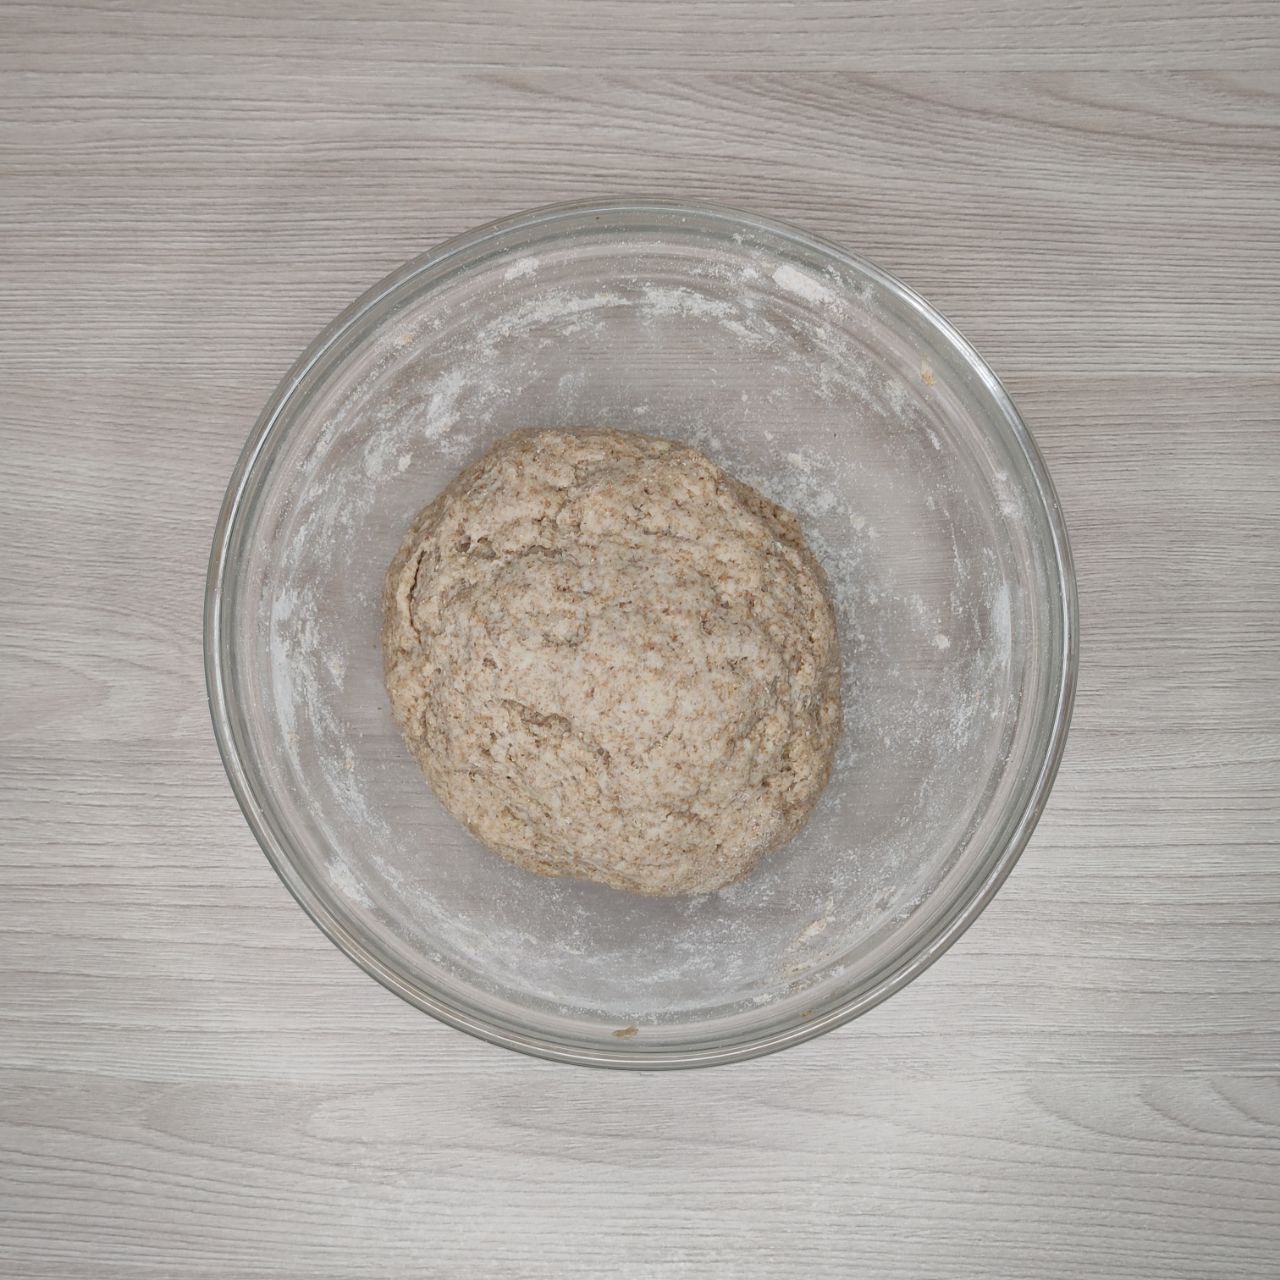 ПП цельнозерновые булочки "Синнабон" на кефире с рисовым кремом - 3 шаг